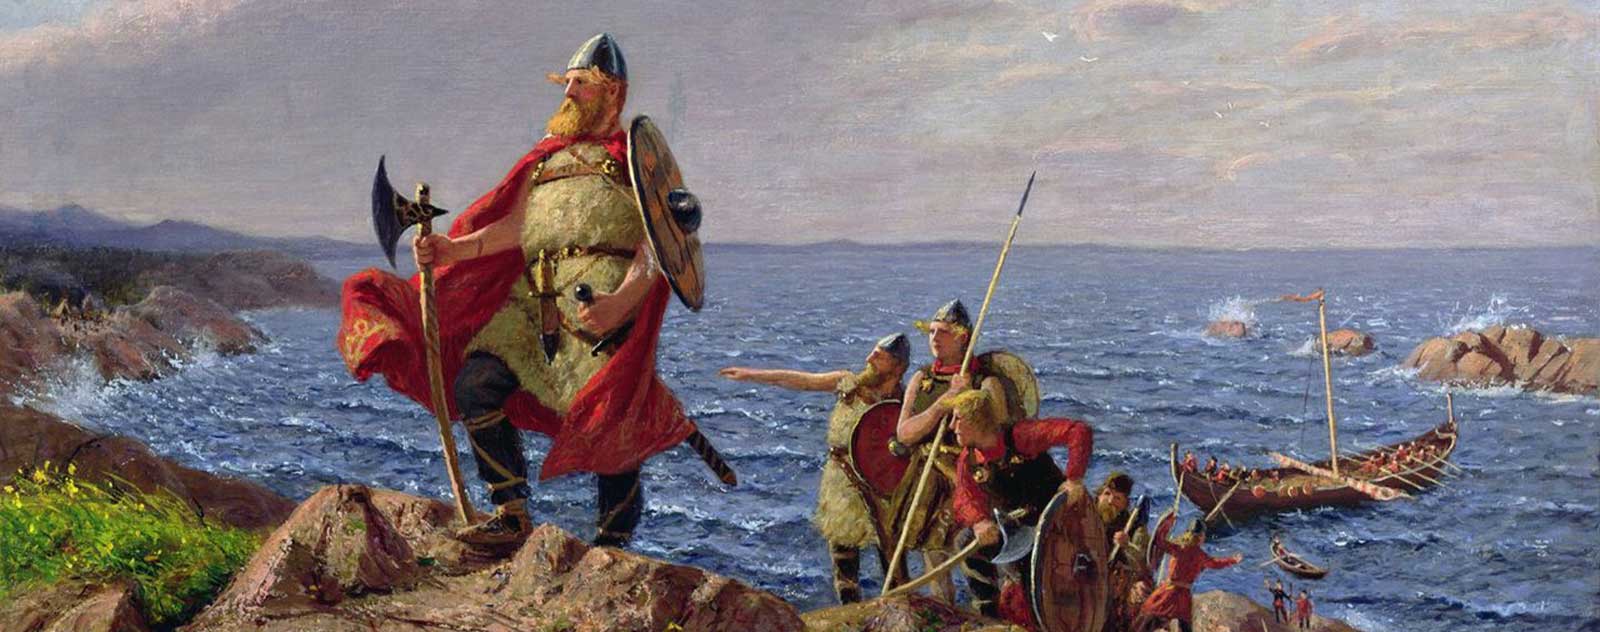 Leif Erikson découverte Amérique